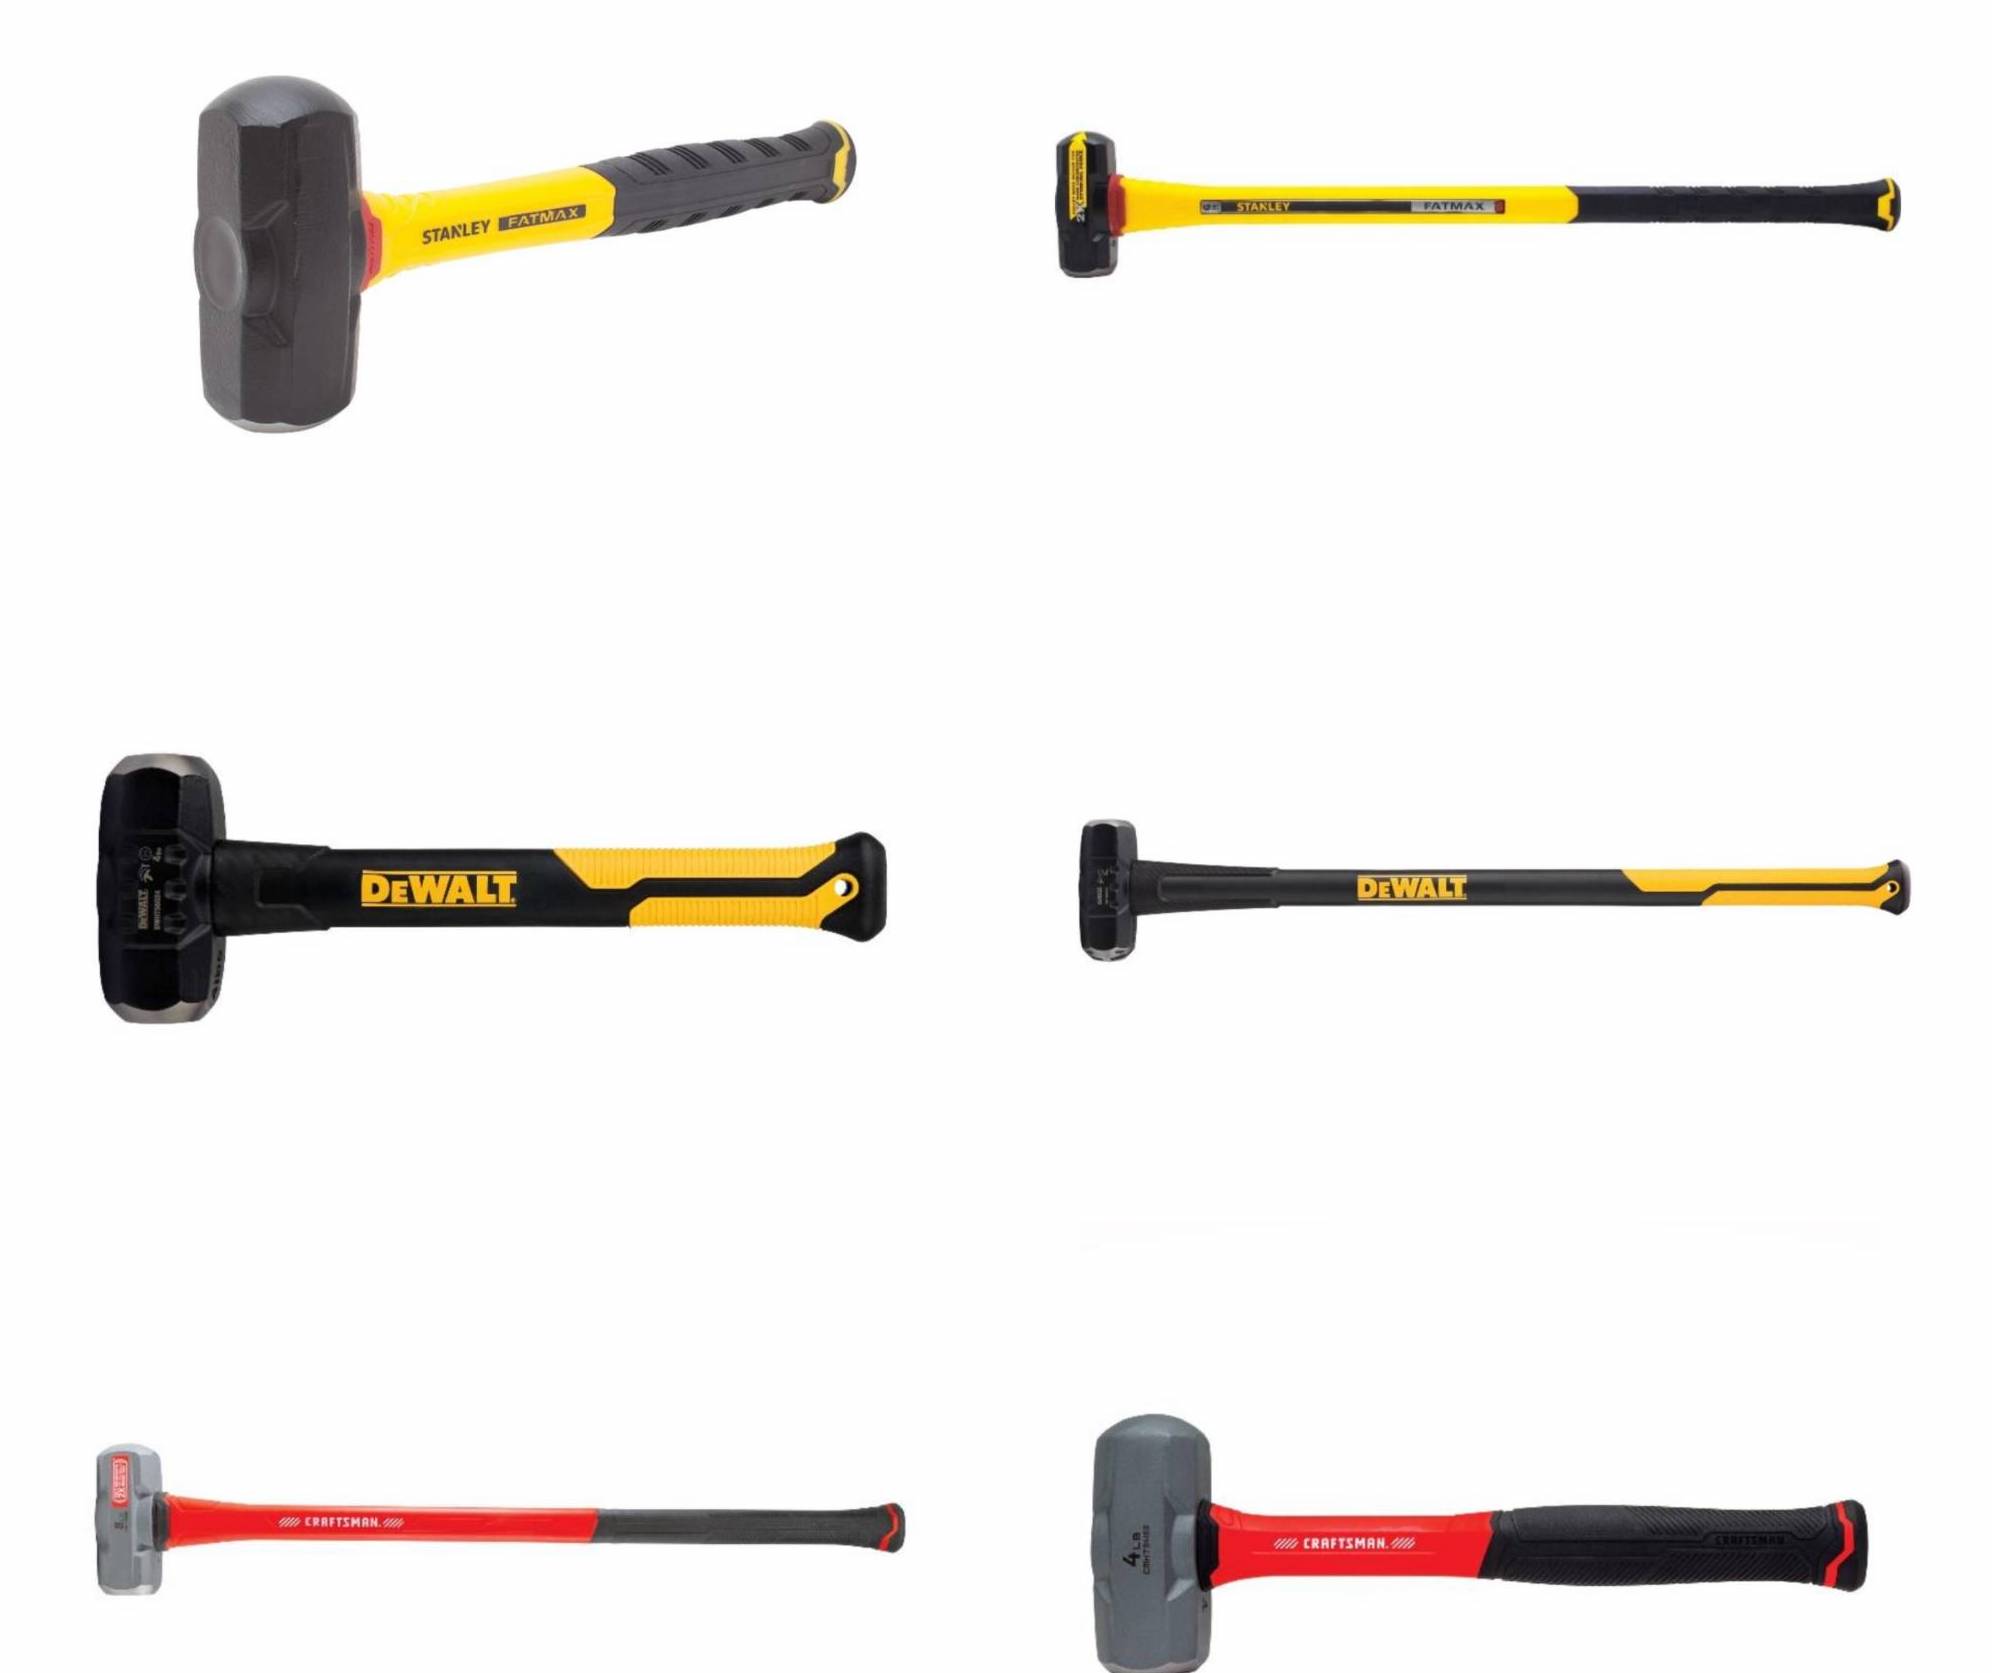 Black & Decker Recalls Hammer Drills Due to Injury Hazard